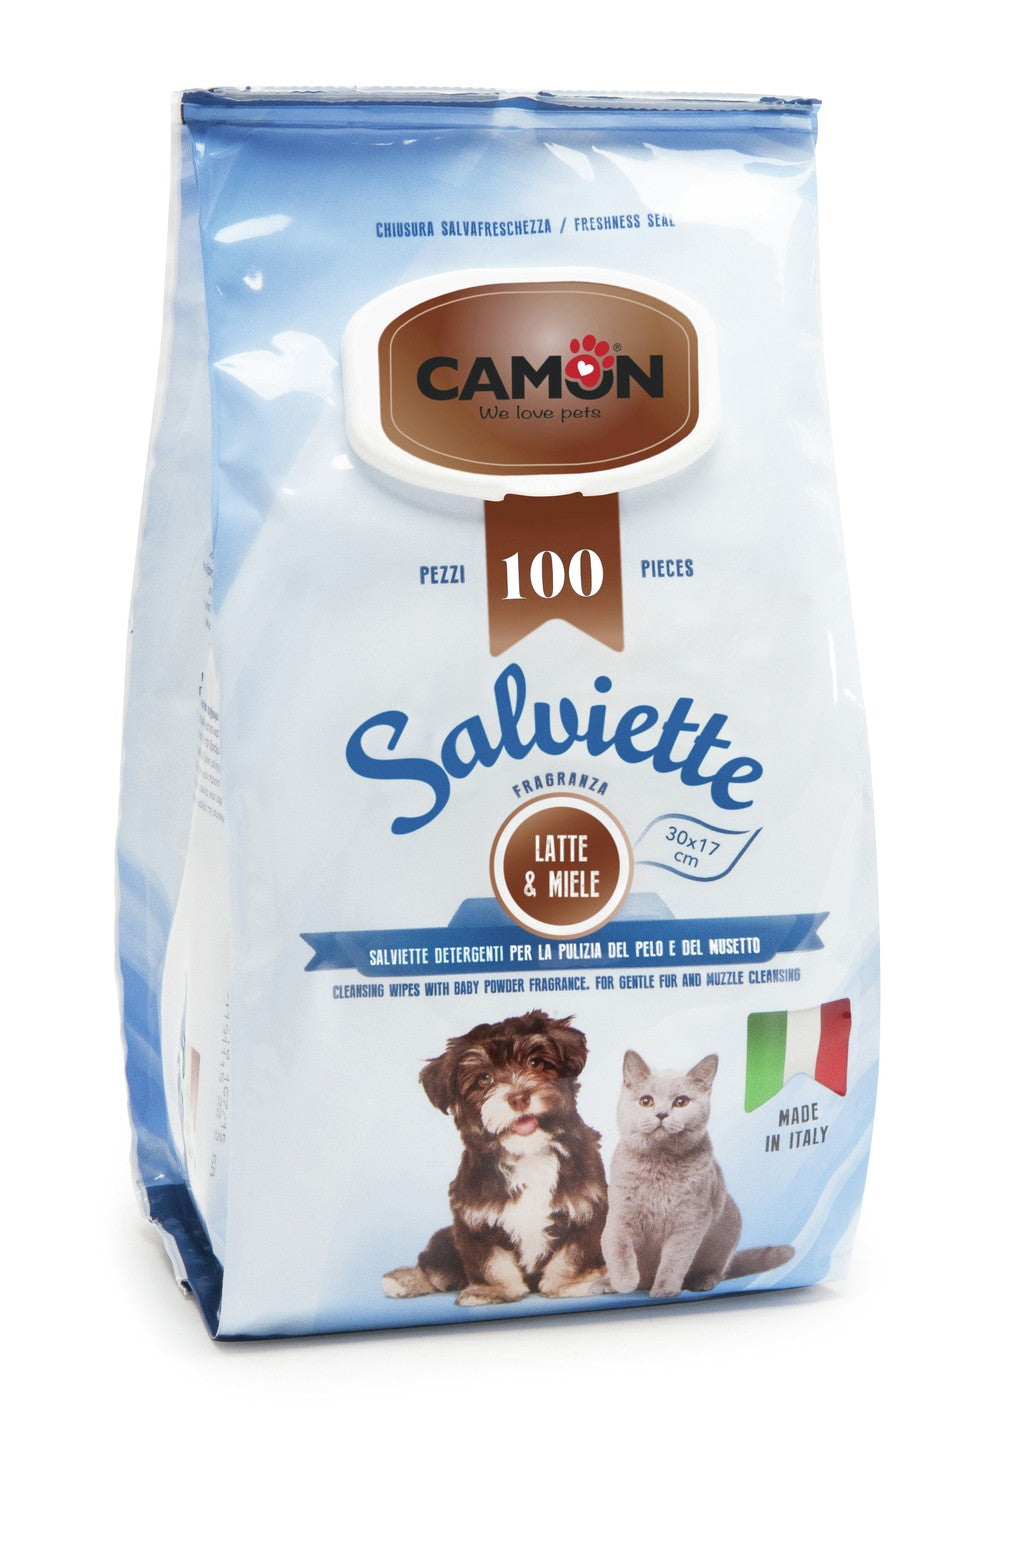 Camon Salviette Latte&miele Maxi formato - LA007